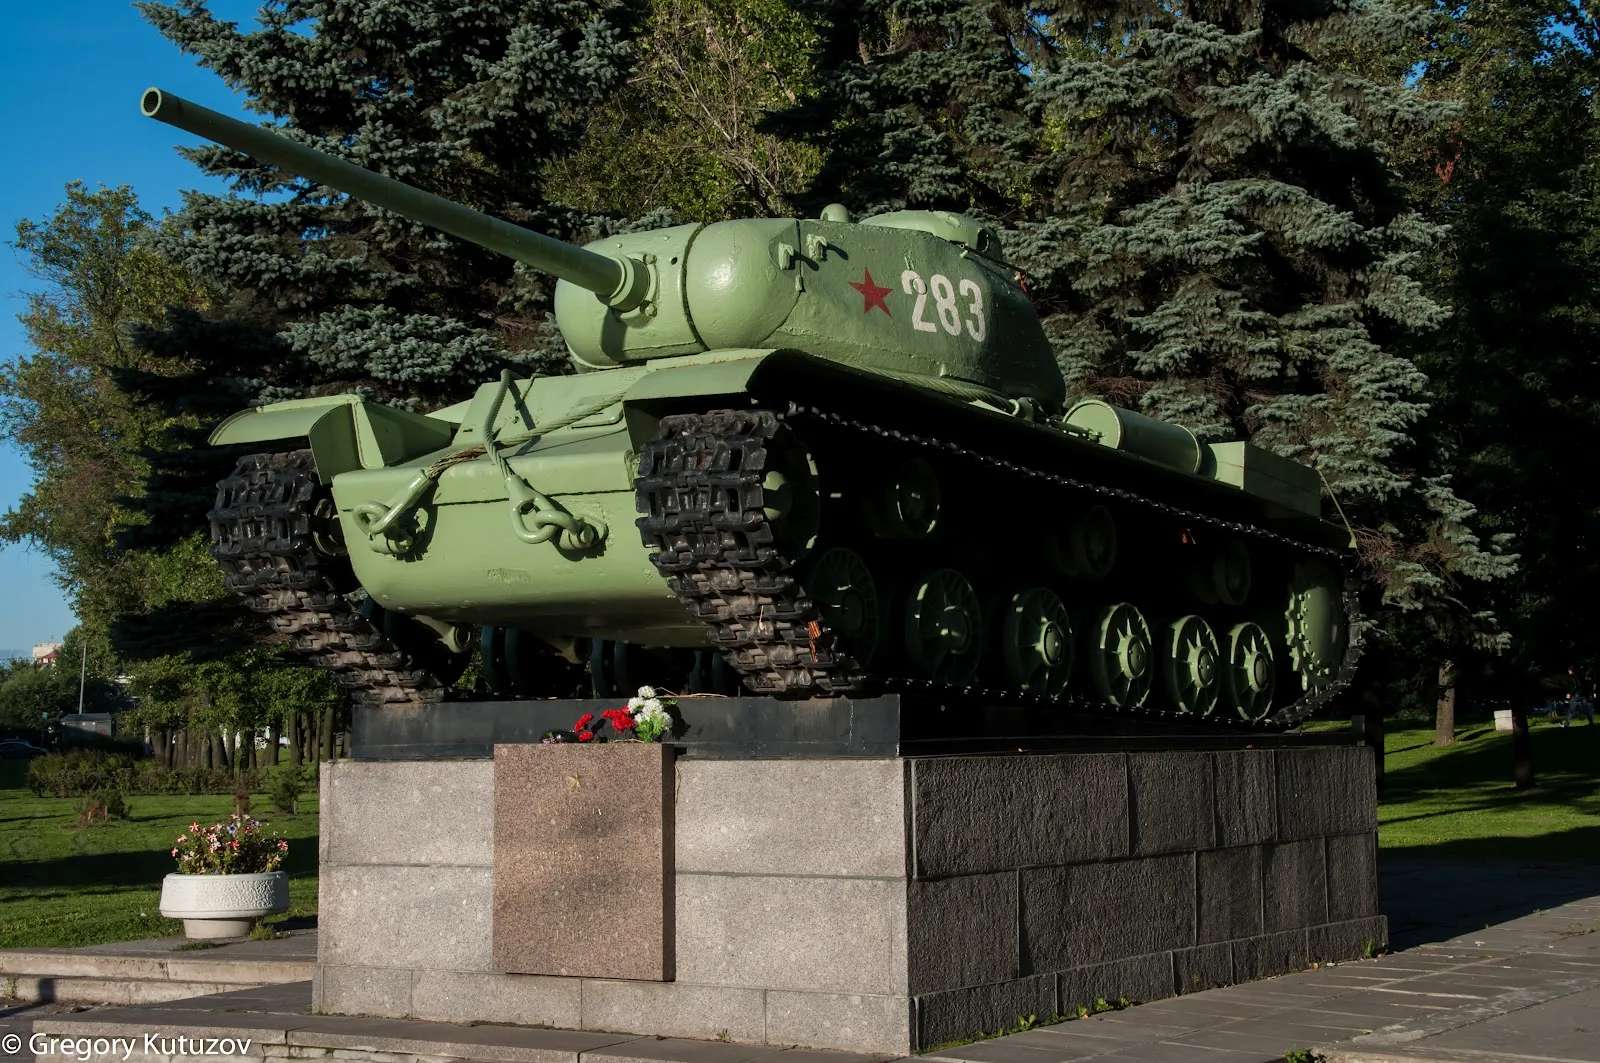 Ж ис. Кв-85 танк. Тяжелый танк кв-85. Кв 85 памятник. Кв 85 танк СССР.